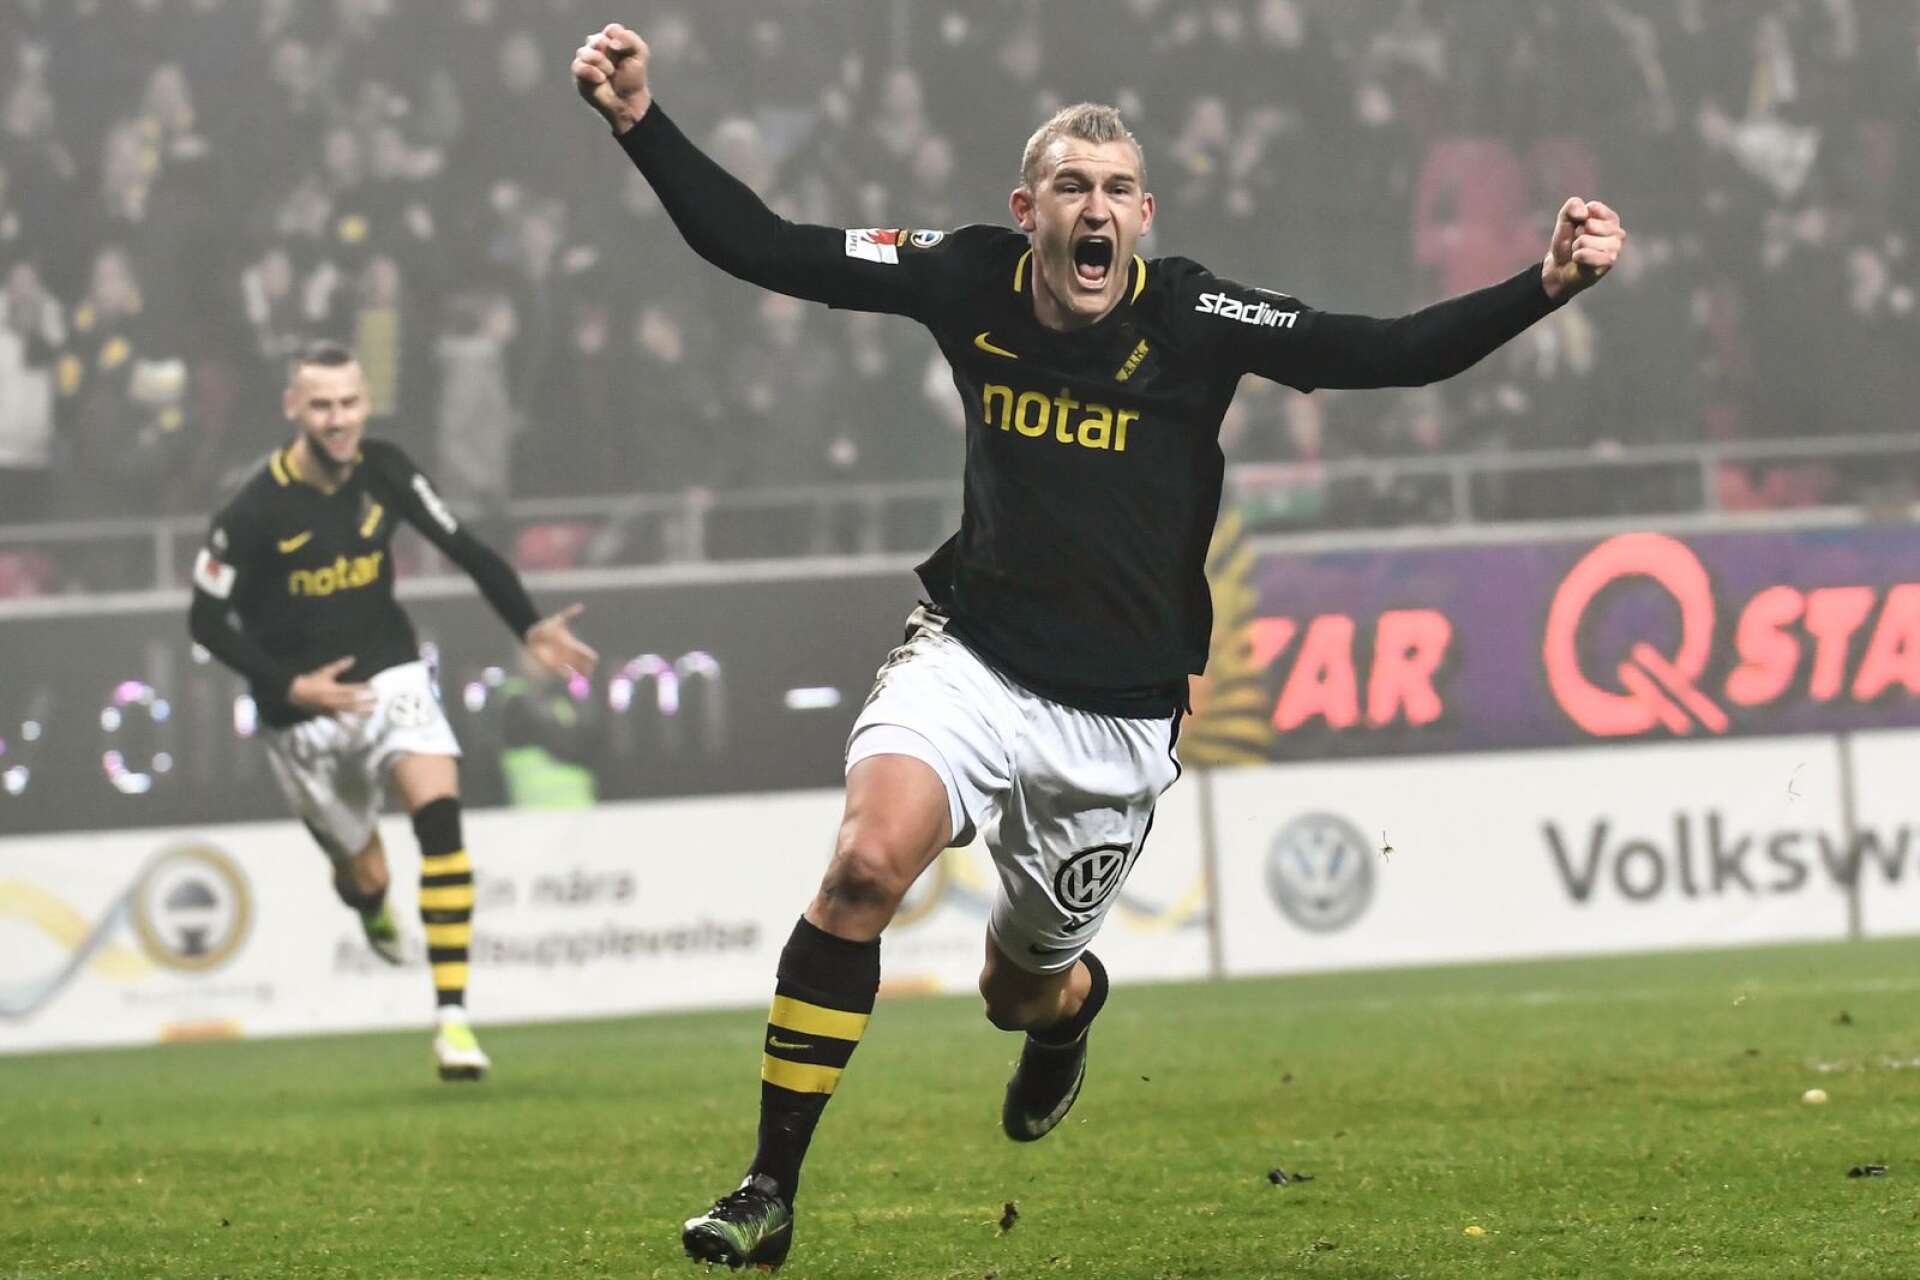 Bengtsforssonen Robin Jansson har tidigare spelat i såväl AIK som Häcken och det är därför som lagen kommer till Långevi. Det är dock oklart om Robin Jansson själv kommer att vara med i firandet, eftersom han numera är proffs i USA. 